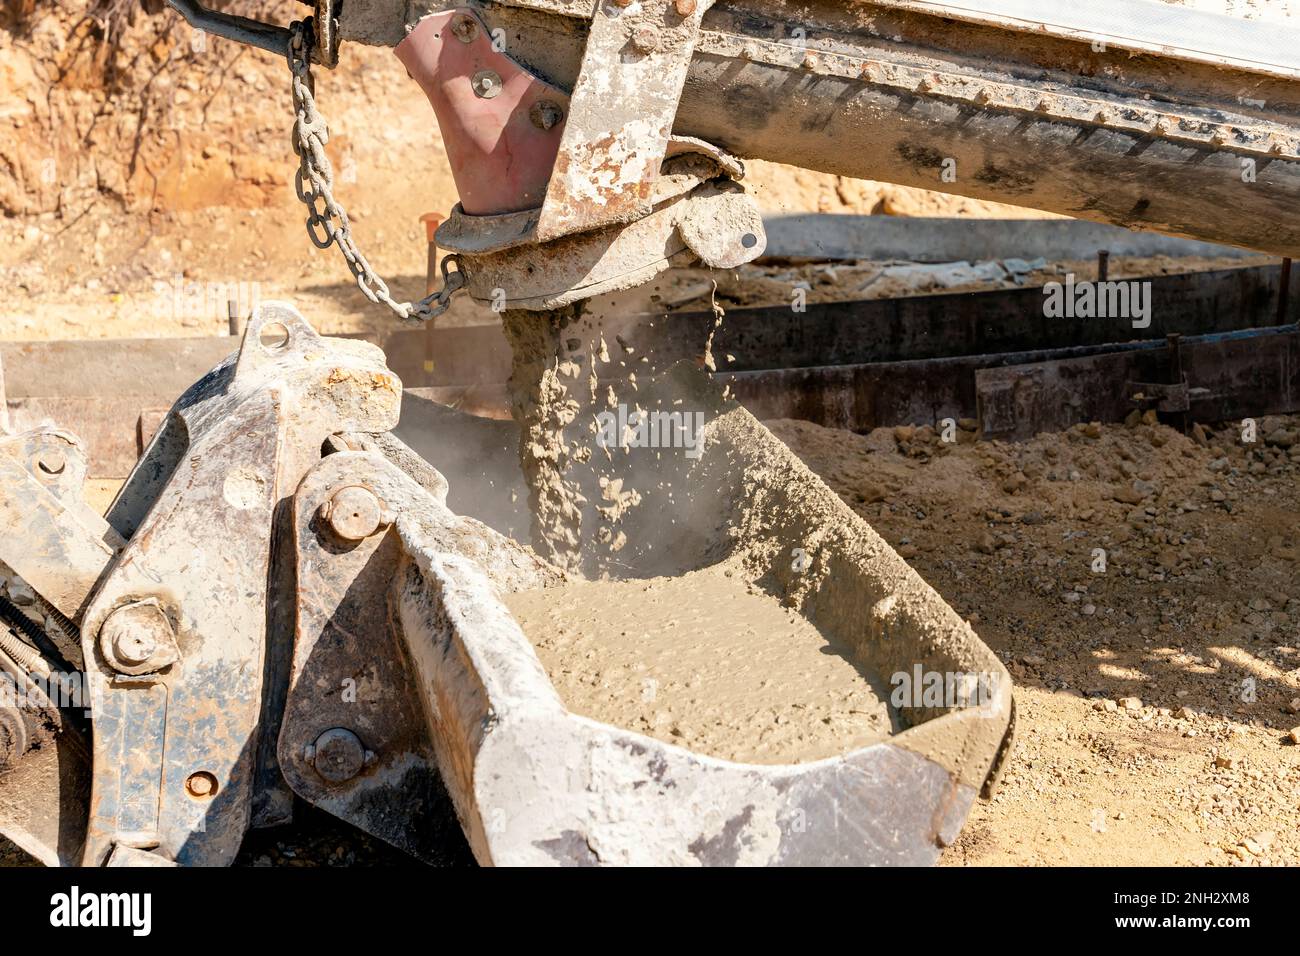 Concrete mixer truck pouring fresh wet concrete into excavators bucket at a construction site Stock Photo